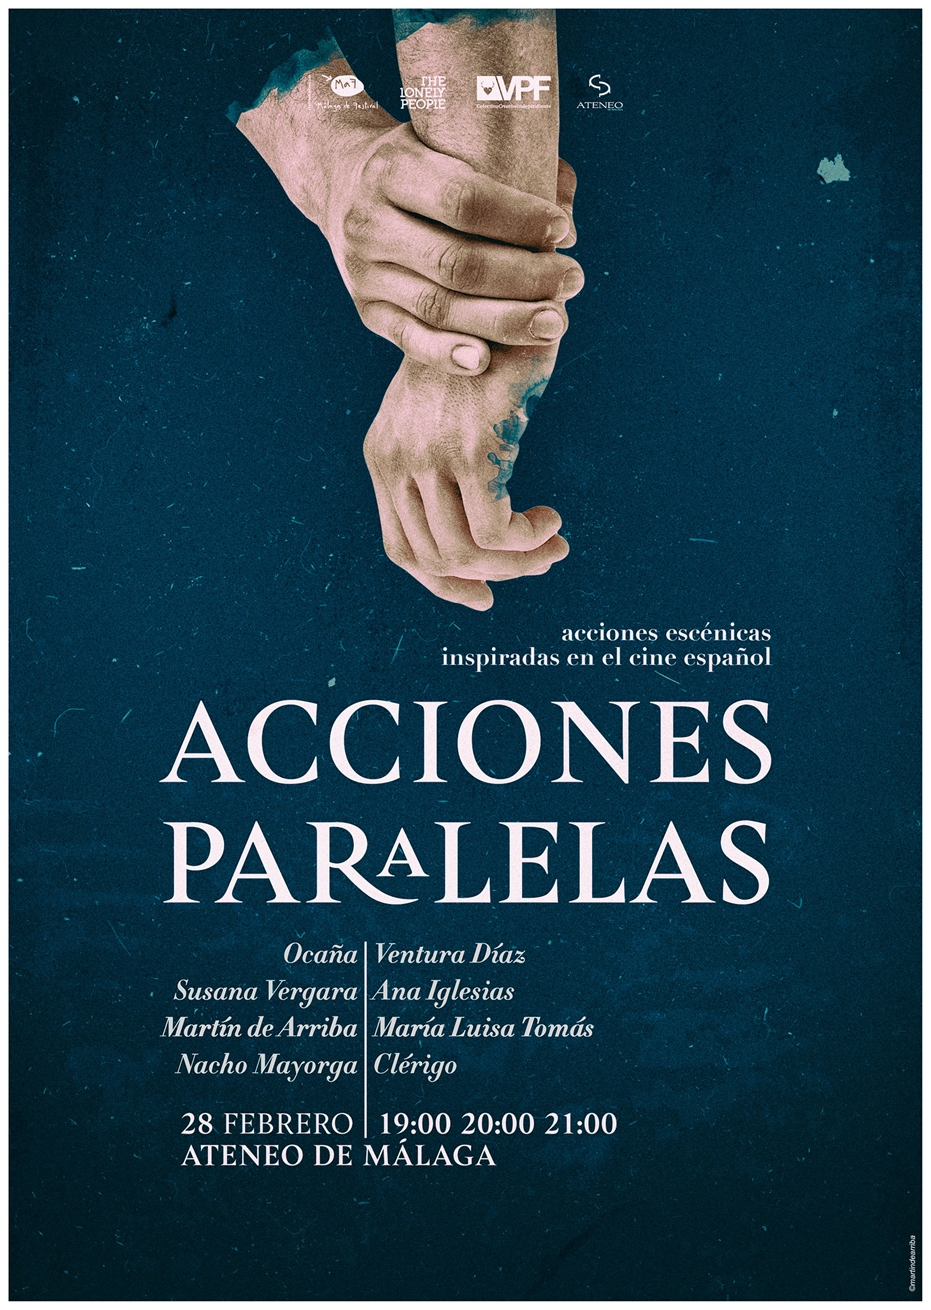 'Acciones paralelas'. Homenaje escénico al cine español